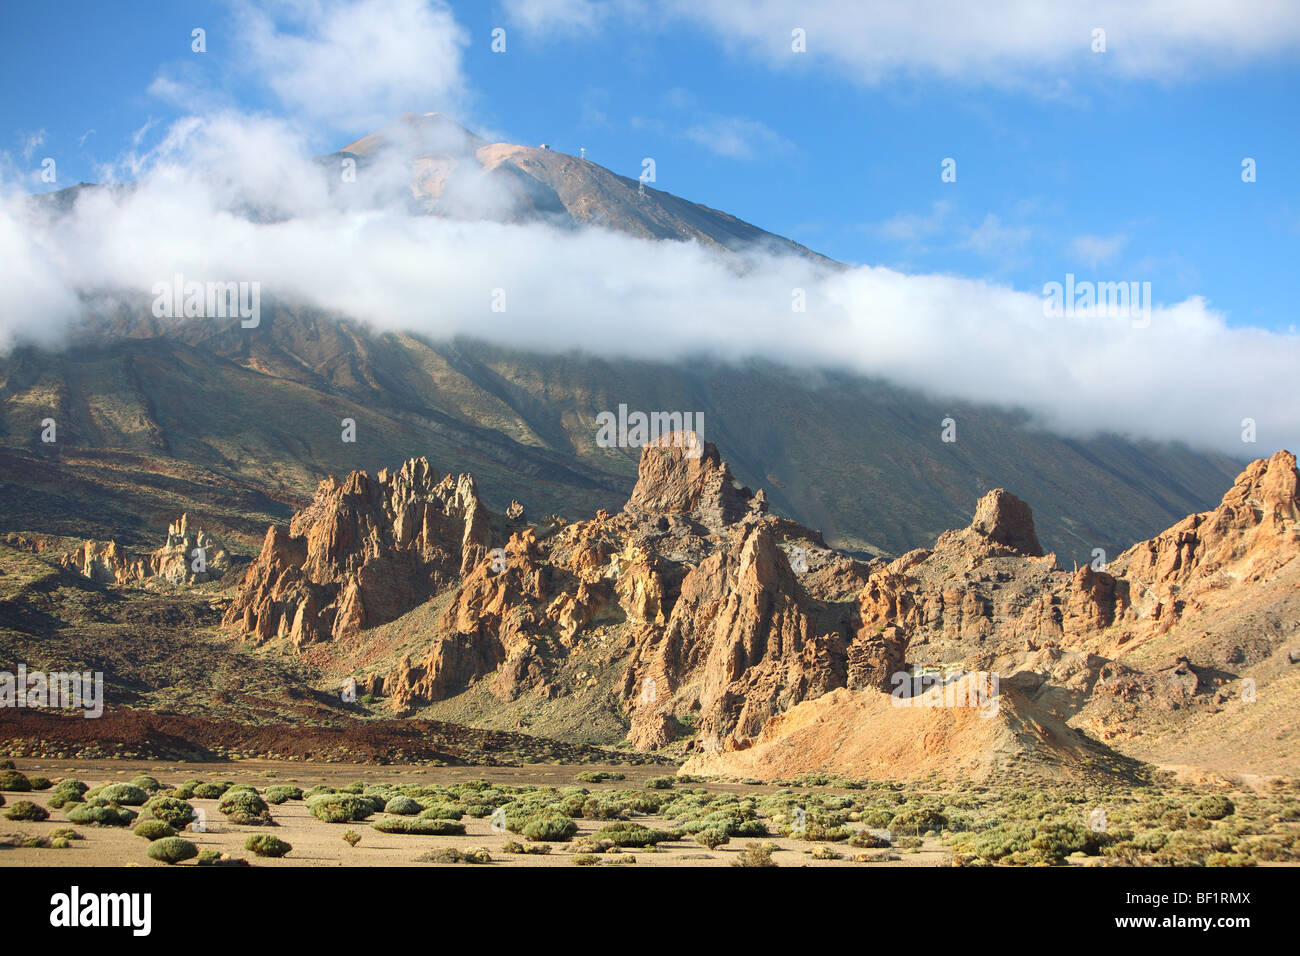 Tenerife, Canary Islands, volcanic mountain landscape, Parque nacional del Teide, las canadas, Del Teide Stock Photo